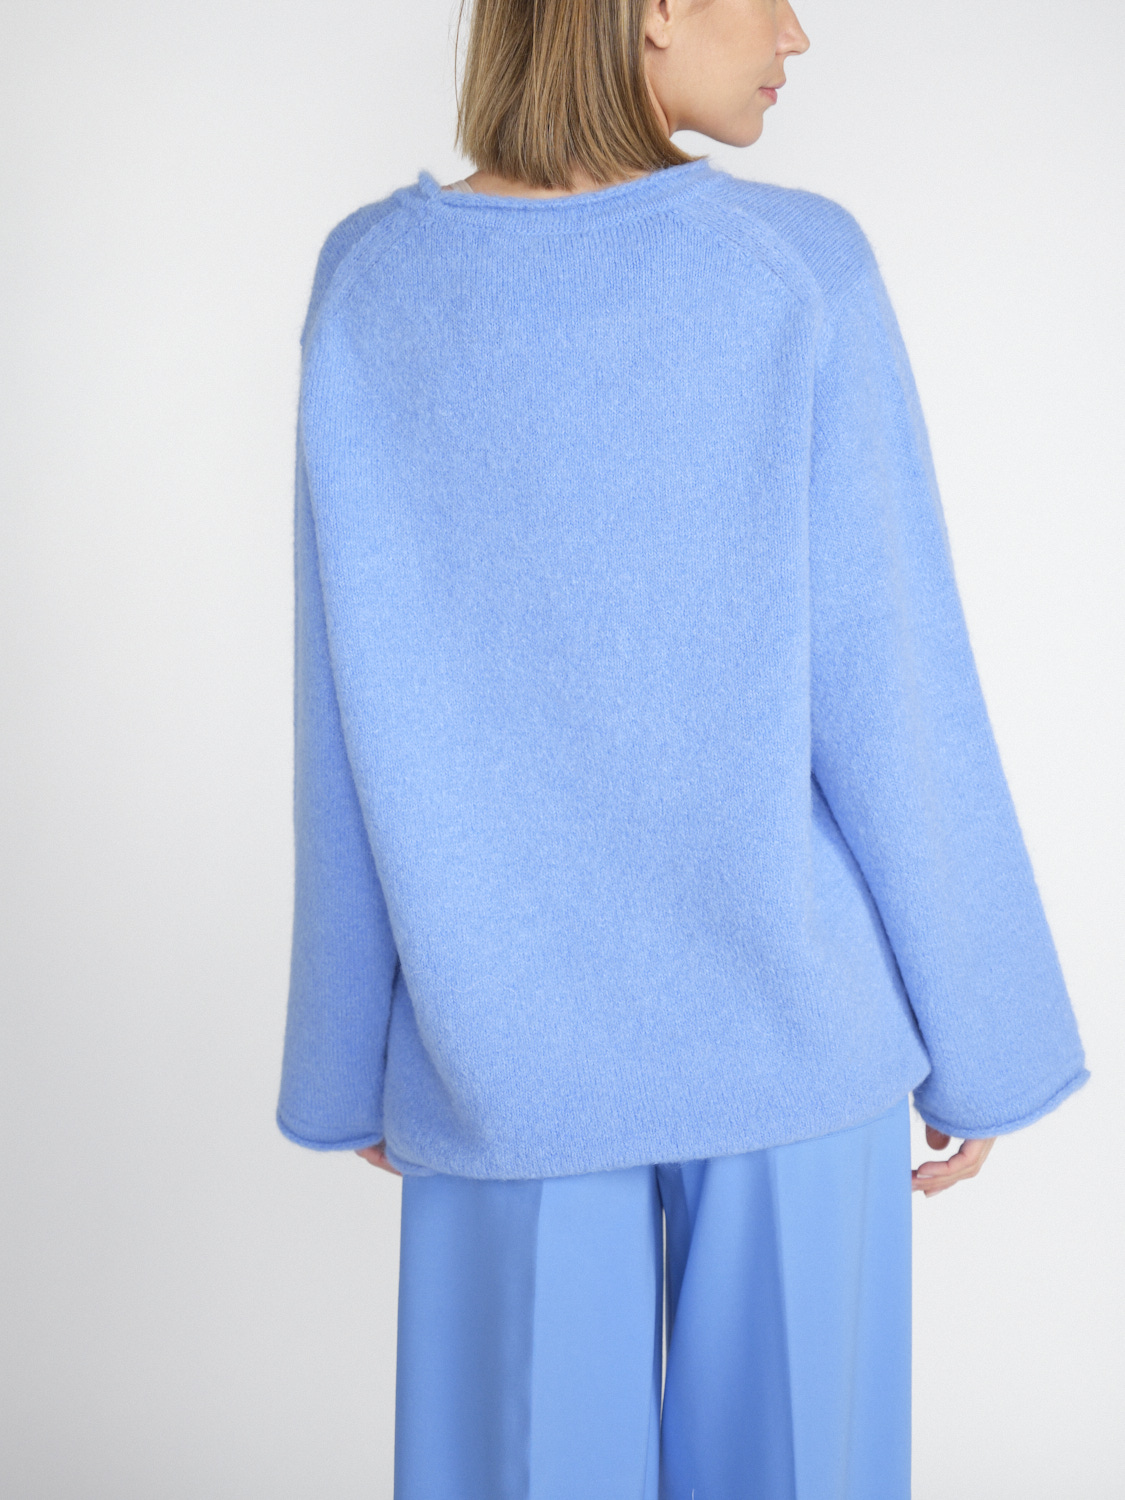 Dorothee Schumacher Cozy Comfort - Oversized sweater in alpaca mix  blue M